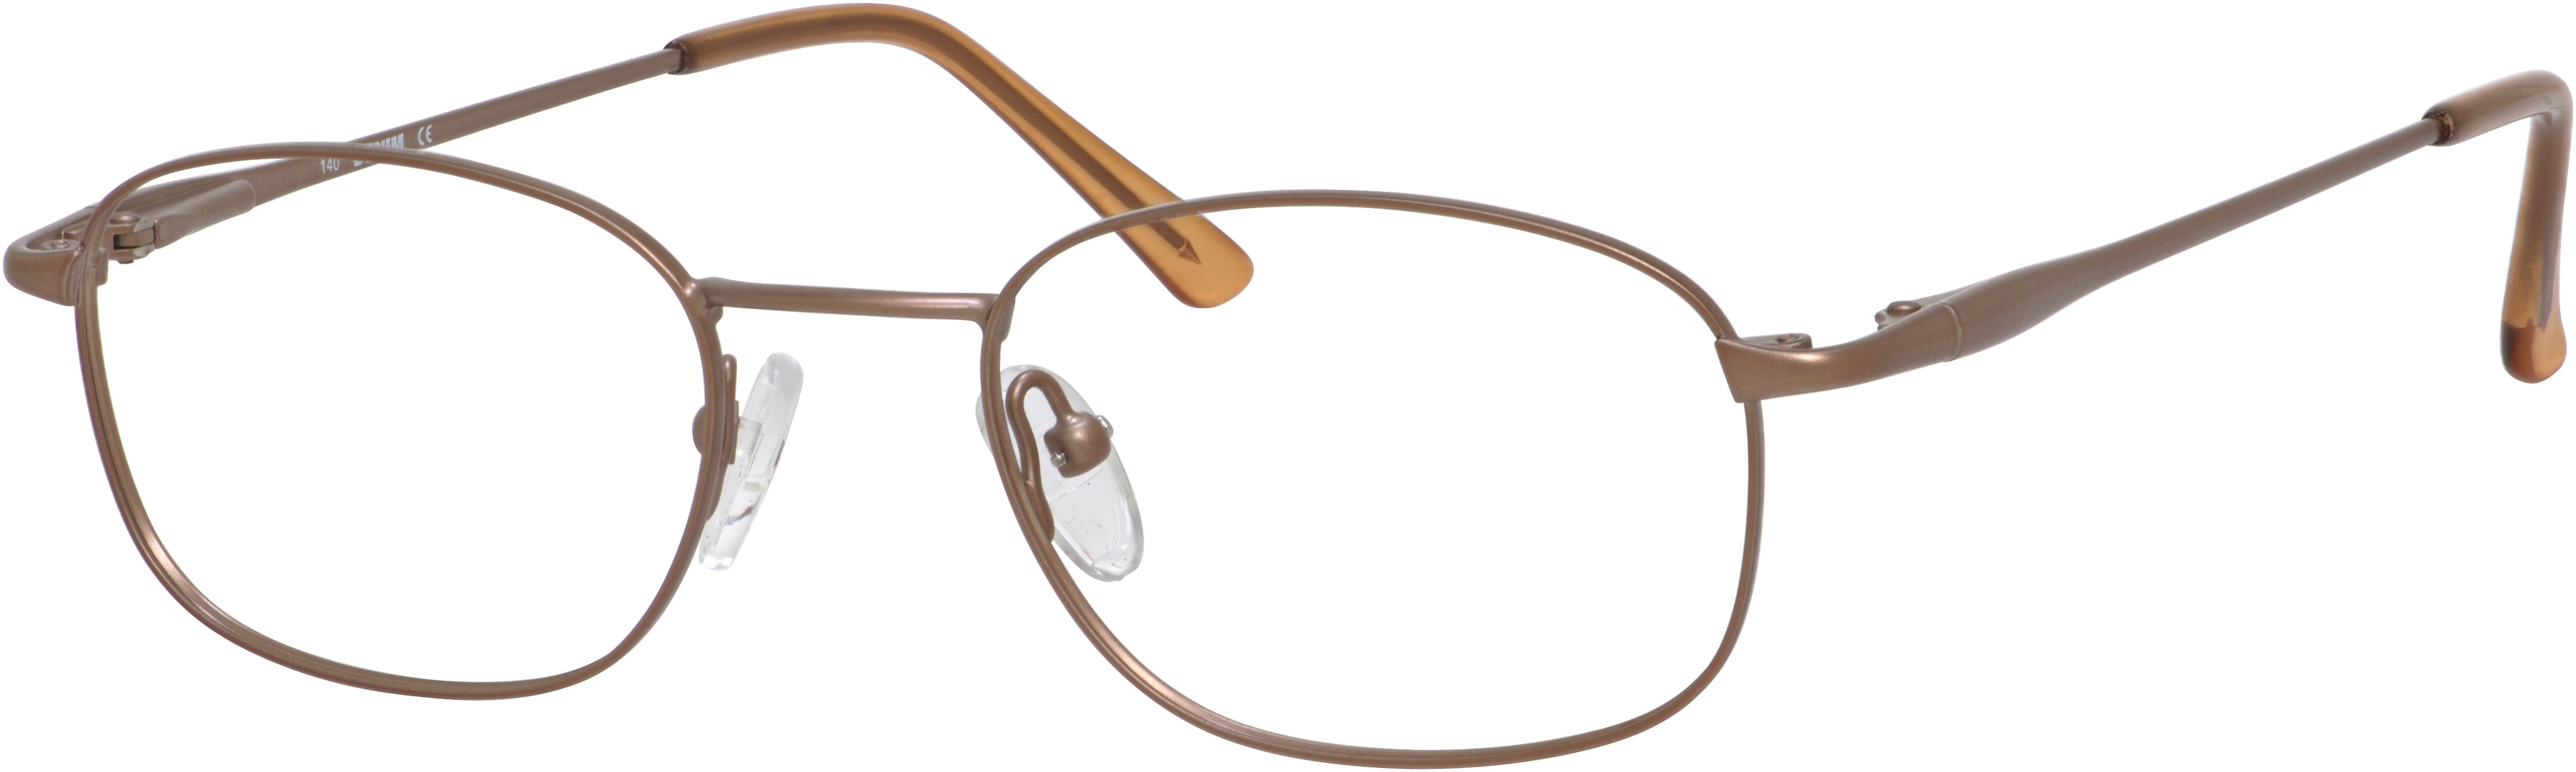  Denim 101 Rectangular Eyeglasses 0K2L-0K2L  Bronze (00 Demo Lens)